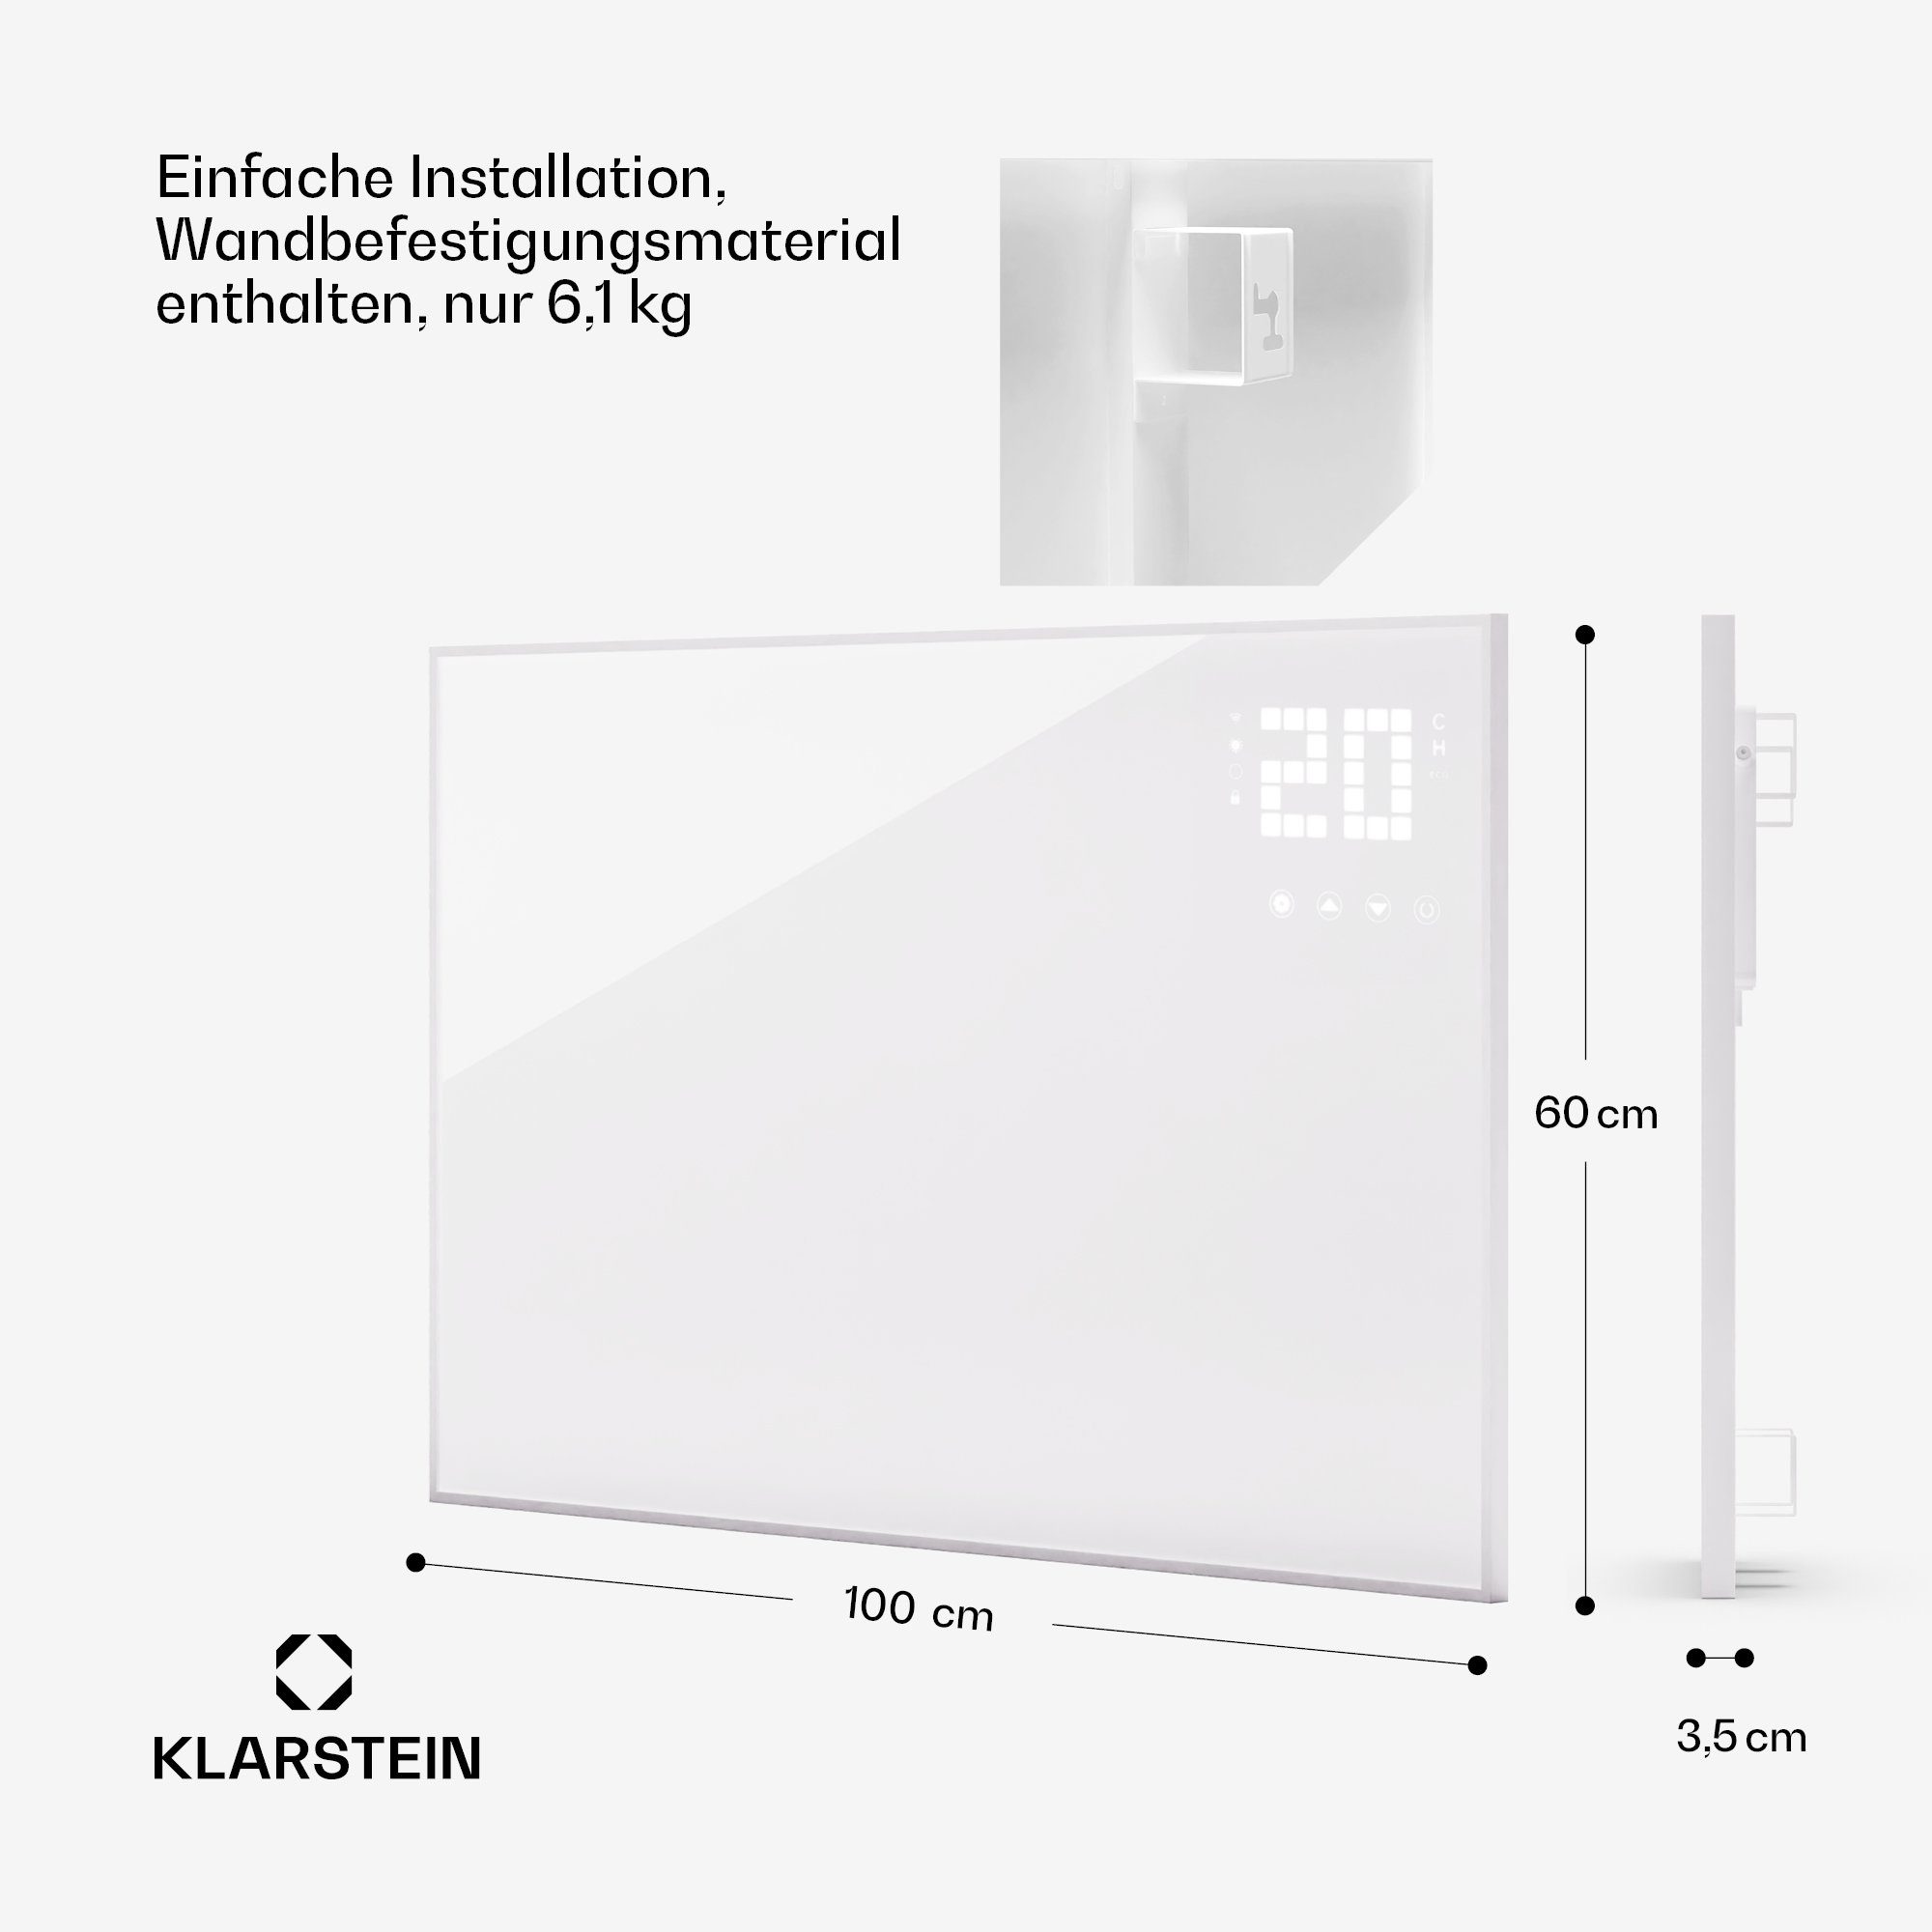 Klarstein Bornholm, mit Wonderwall Heizung Smart elektrischer Infrarot Thermostat Wärmestrahlung Heizkörper